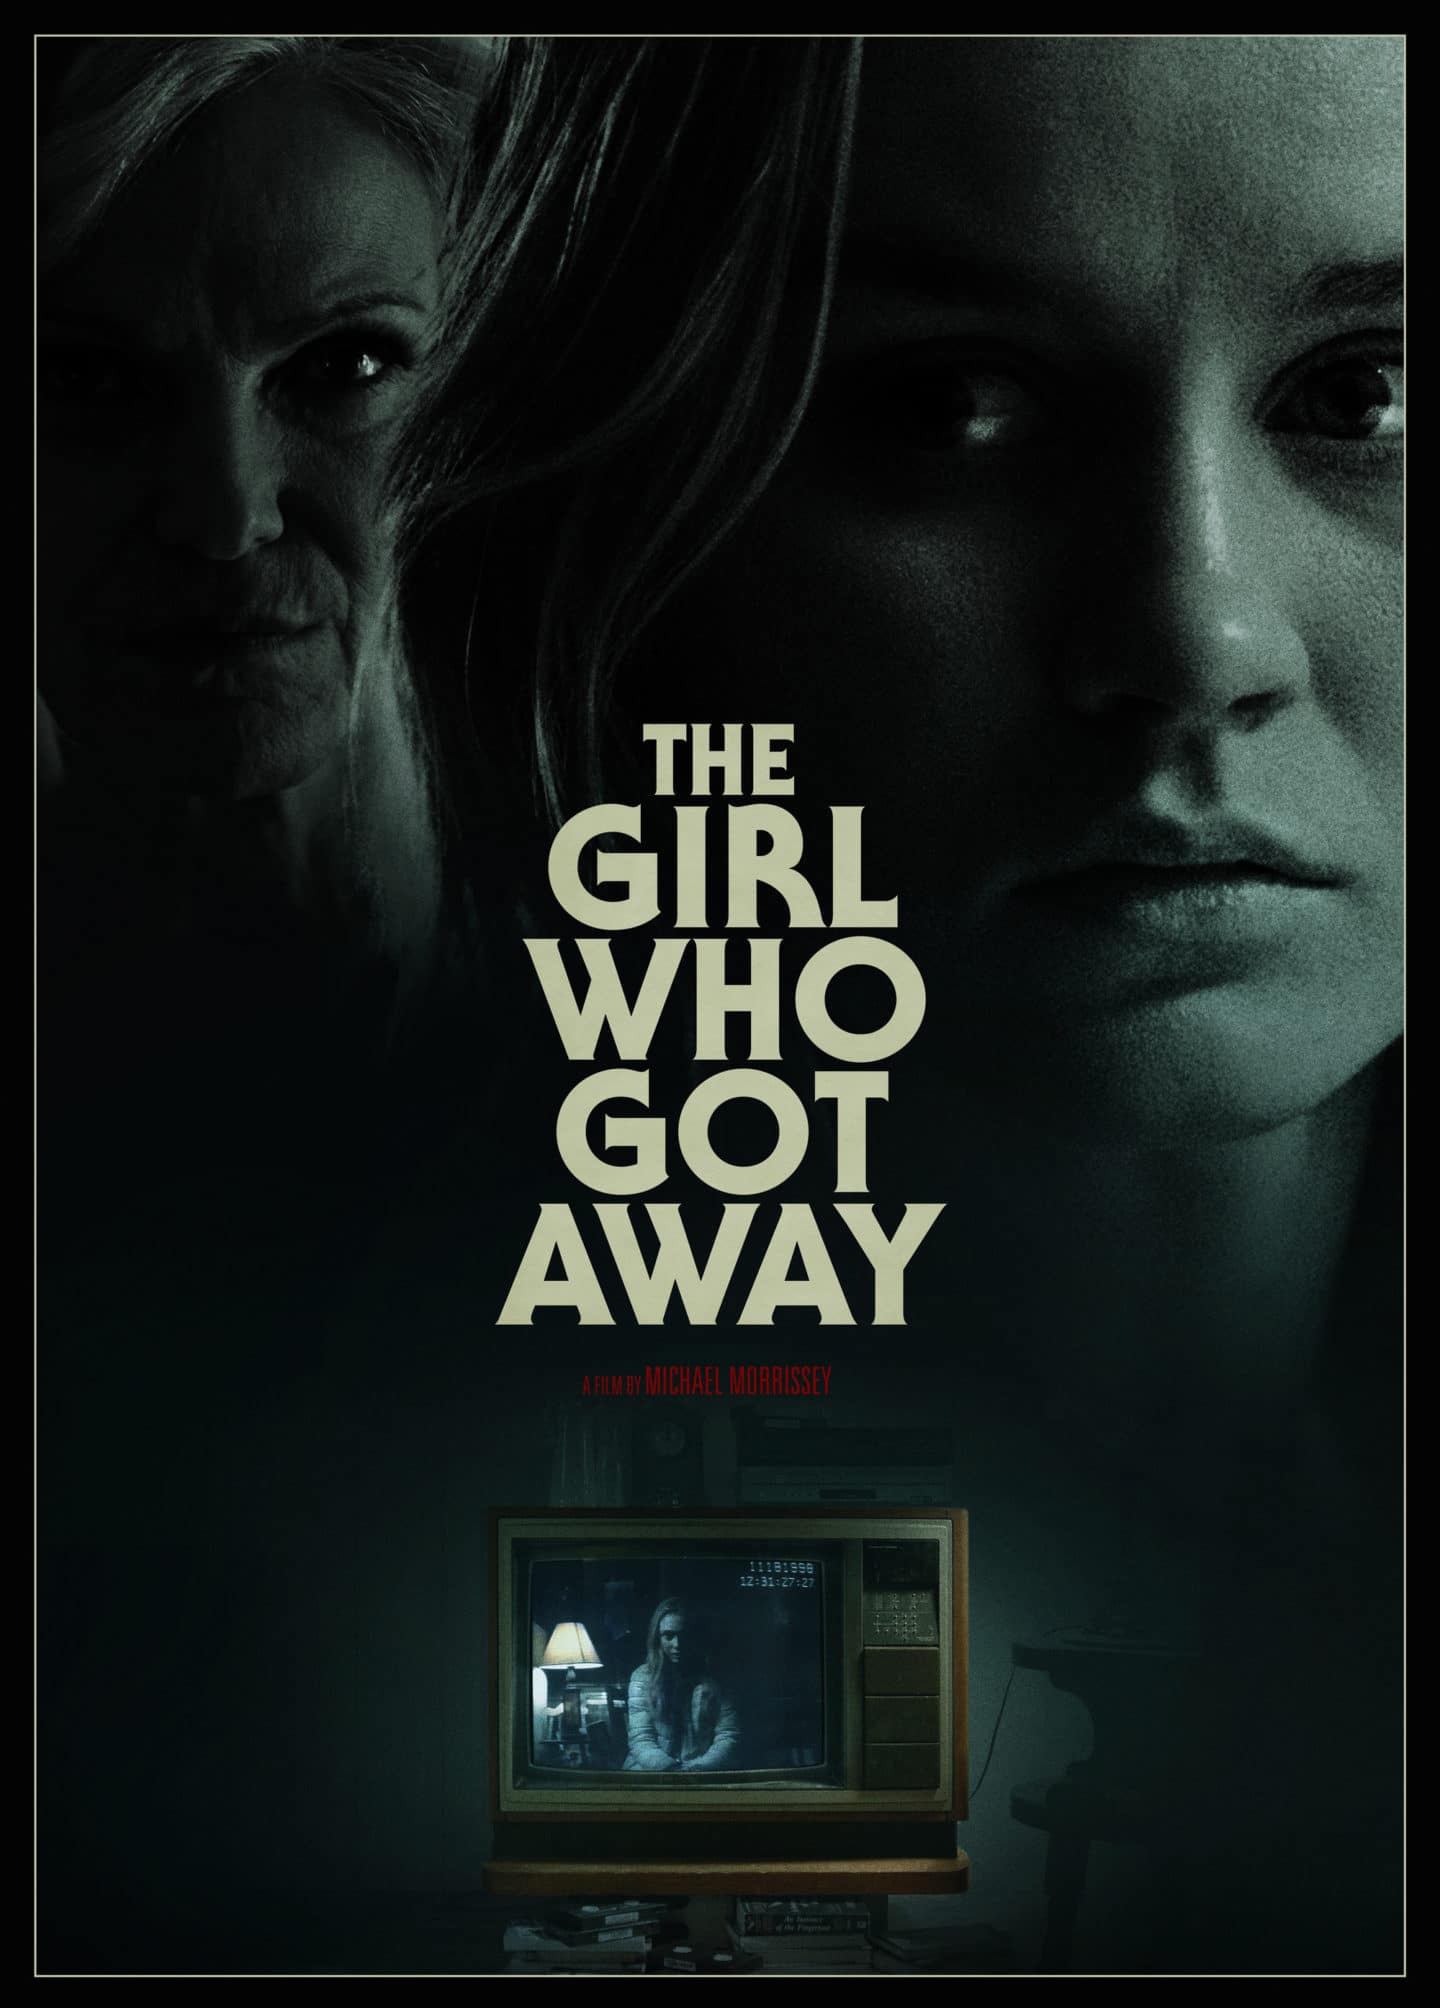 The Girl Who Got Away - Teaser Poster